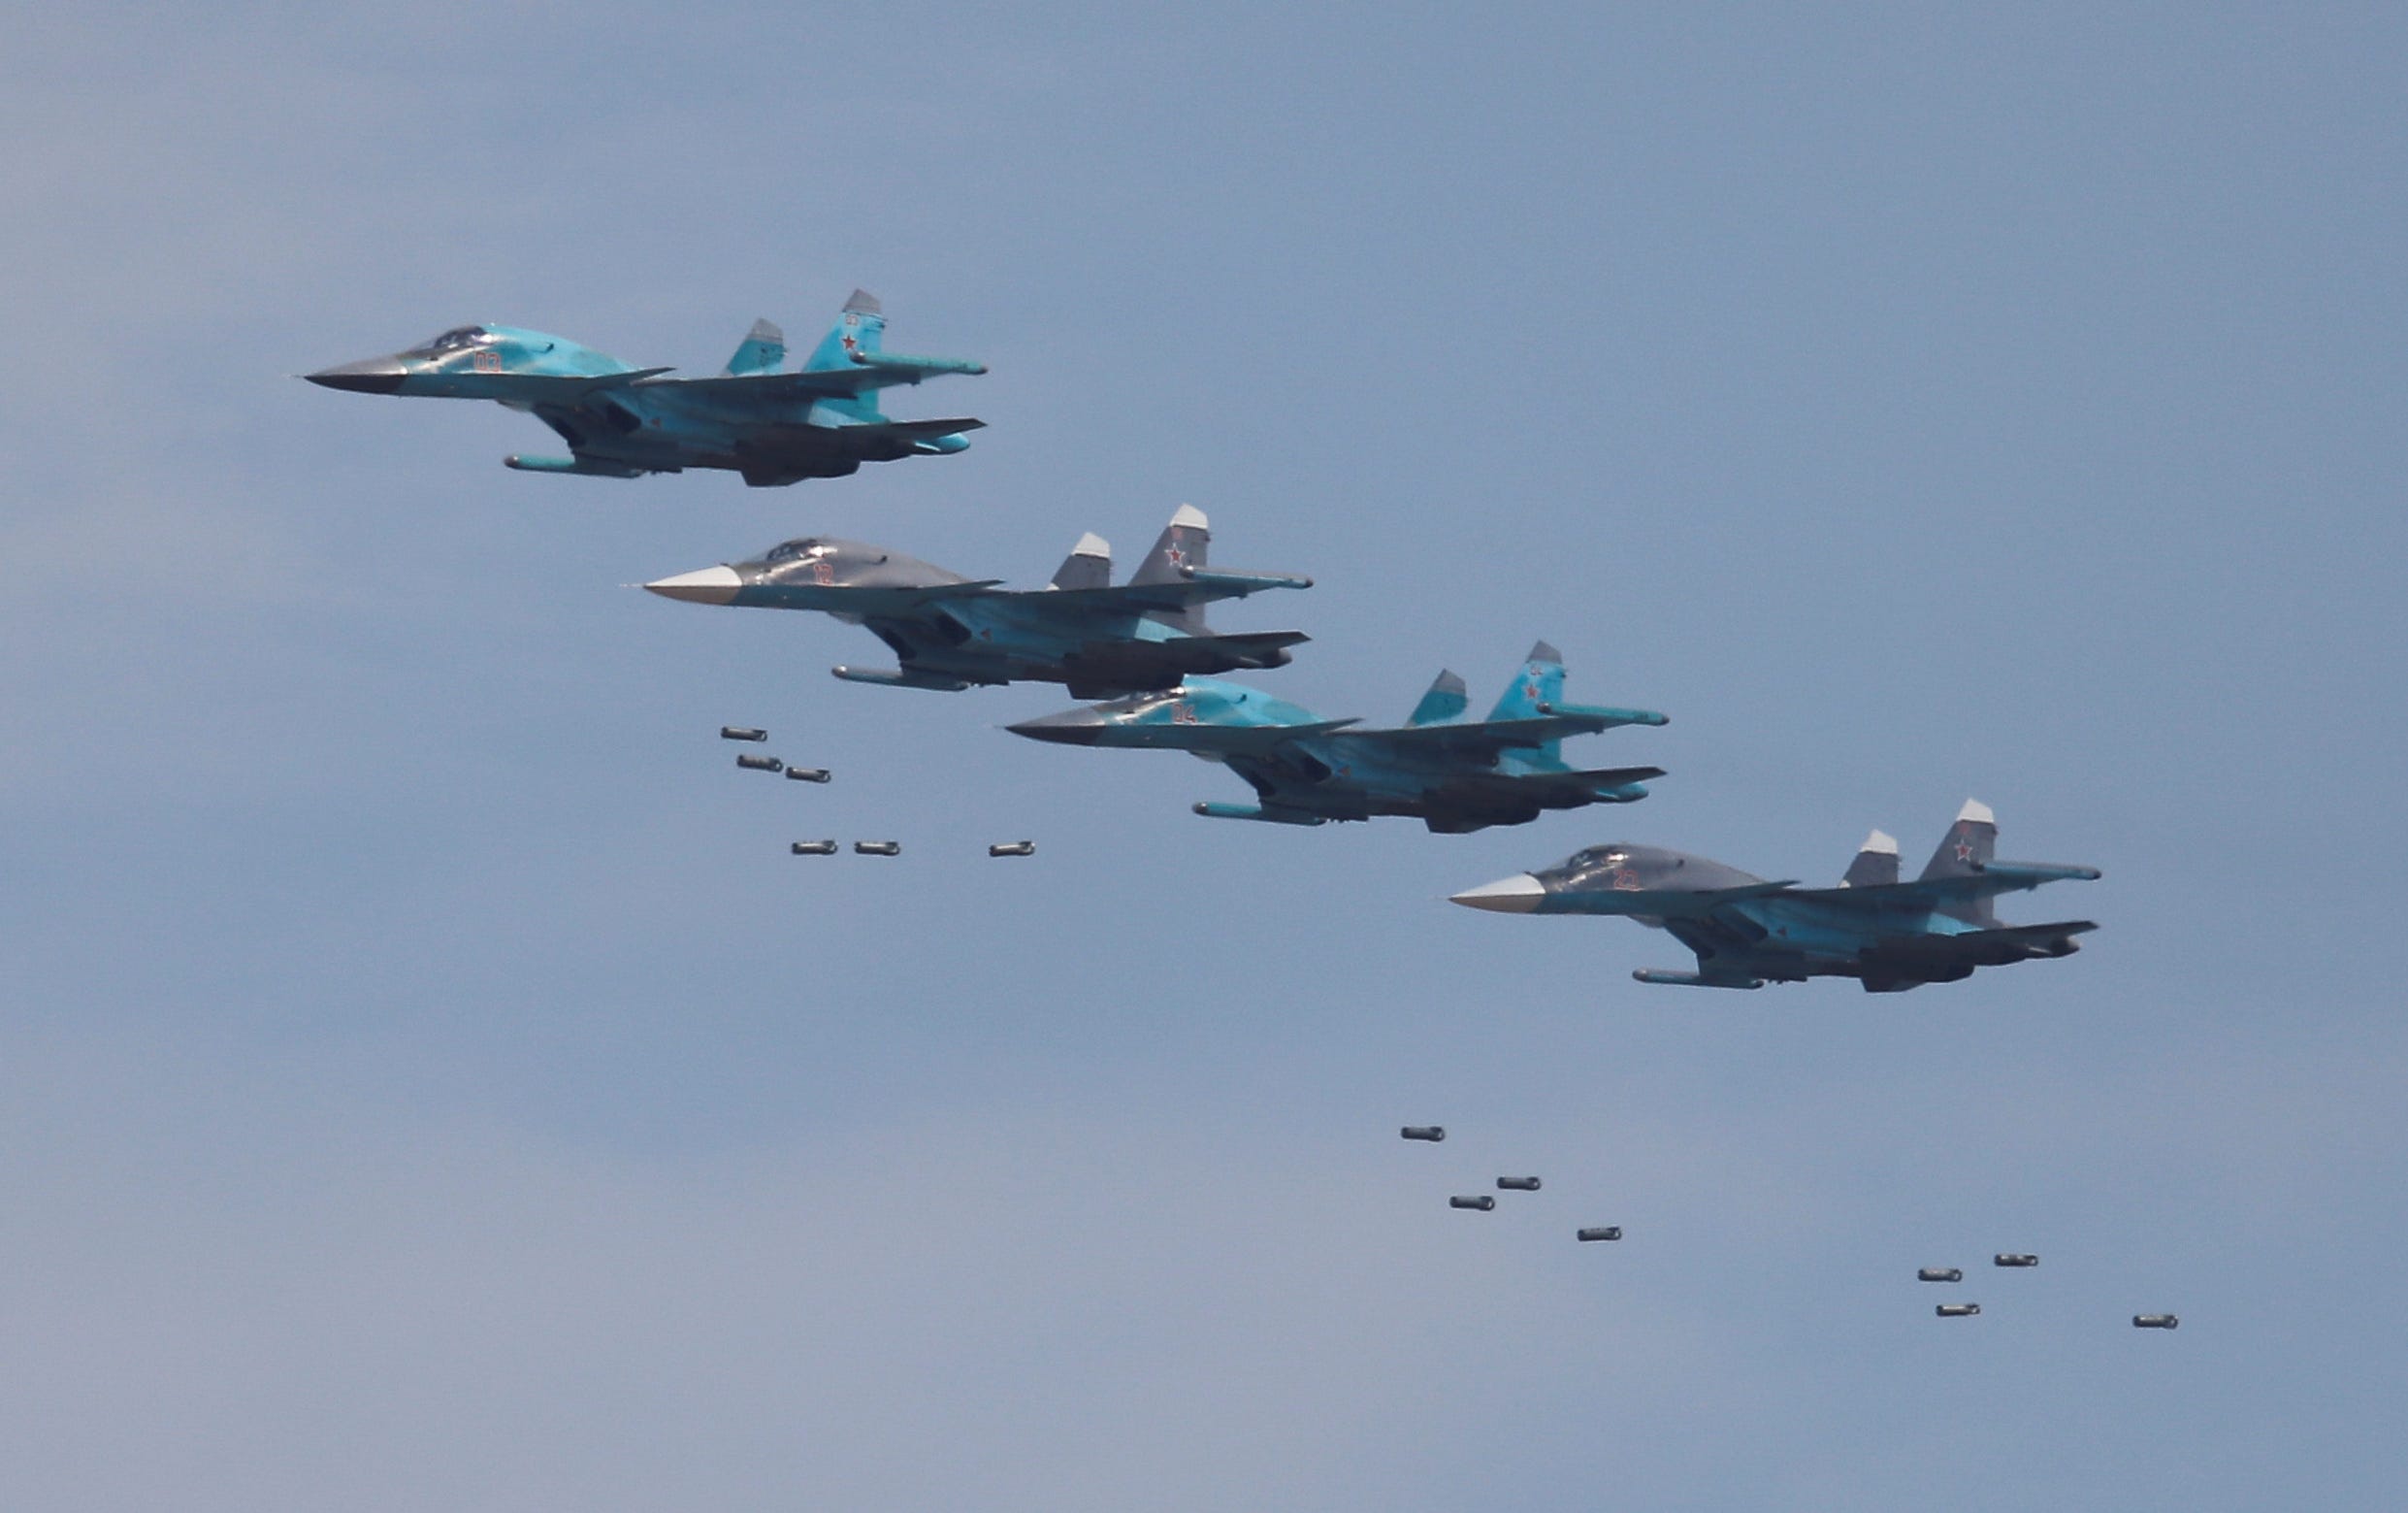 Suchoi Su-34-Bomber werfen Bomben während des Aviadarts-Wettbewerbs im Rahmen der Internationalen Armeespiele 2018 auf dem Dubrovichi-Gebiet außerhalb von Rjasan, Russland, am 4. August 2018 ab.